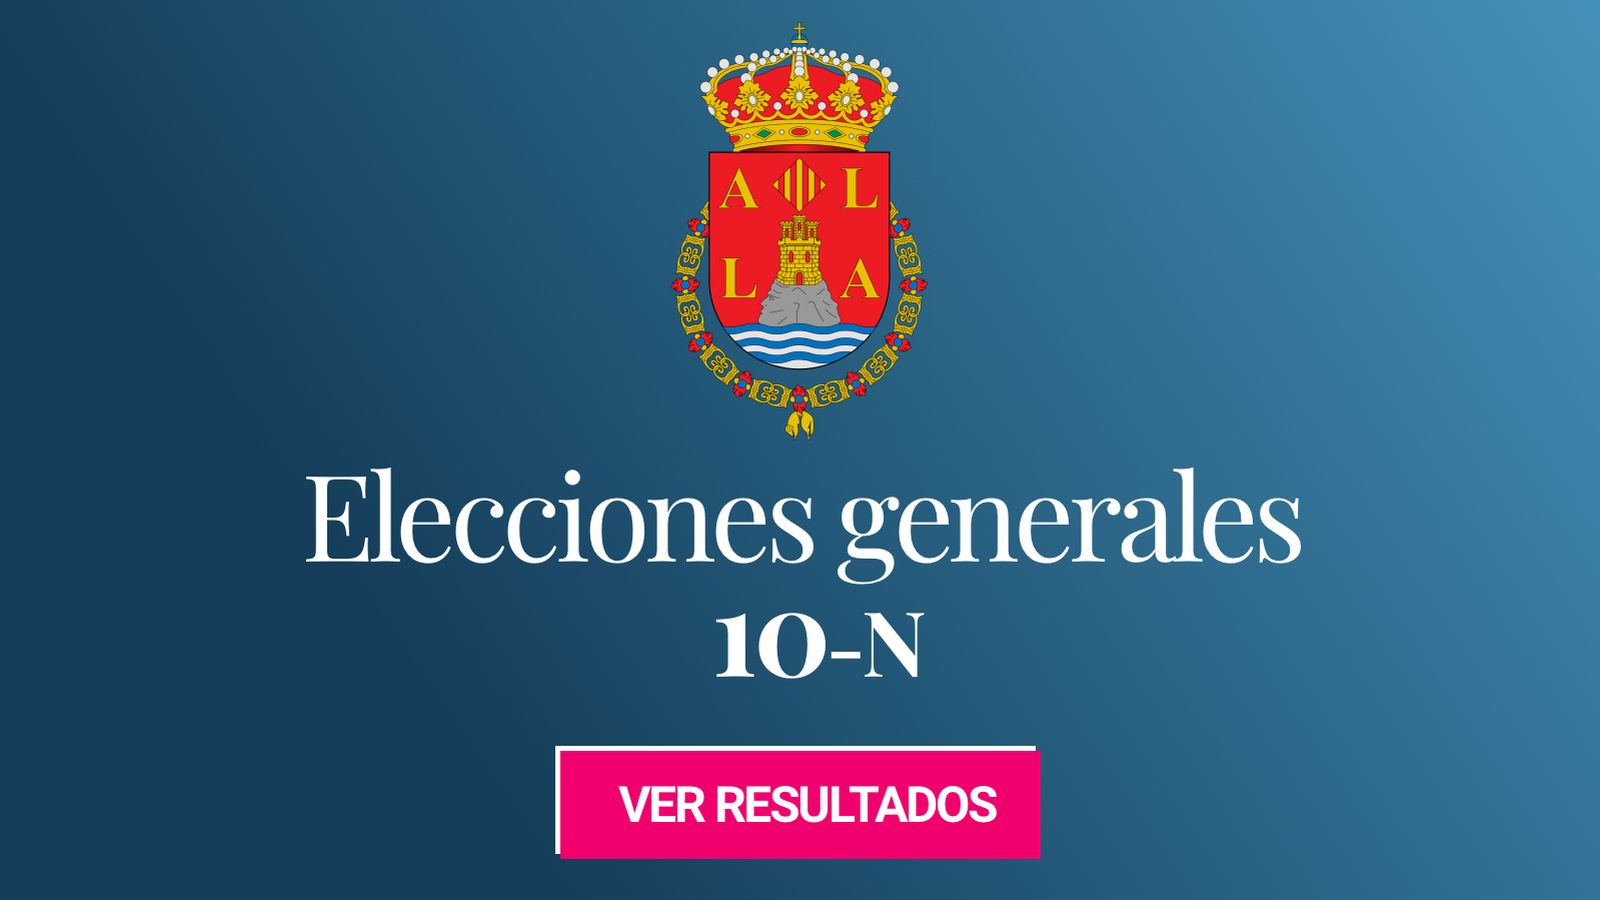 Foto: Elecciones generales 2019 en Alicante. (C.C./EC)